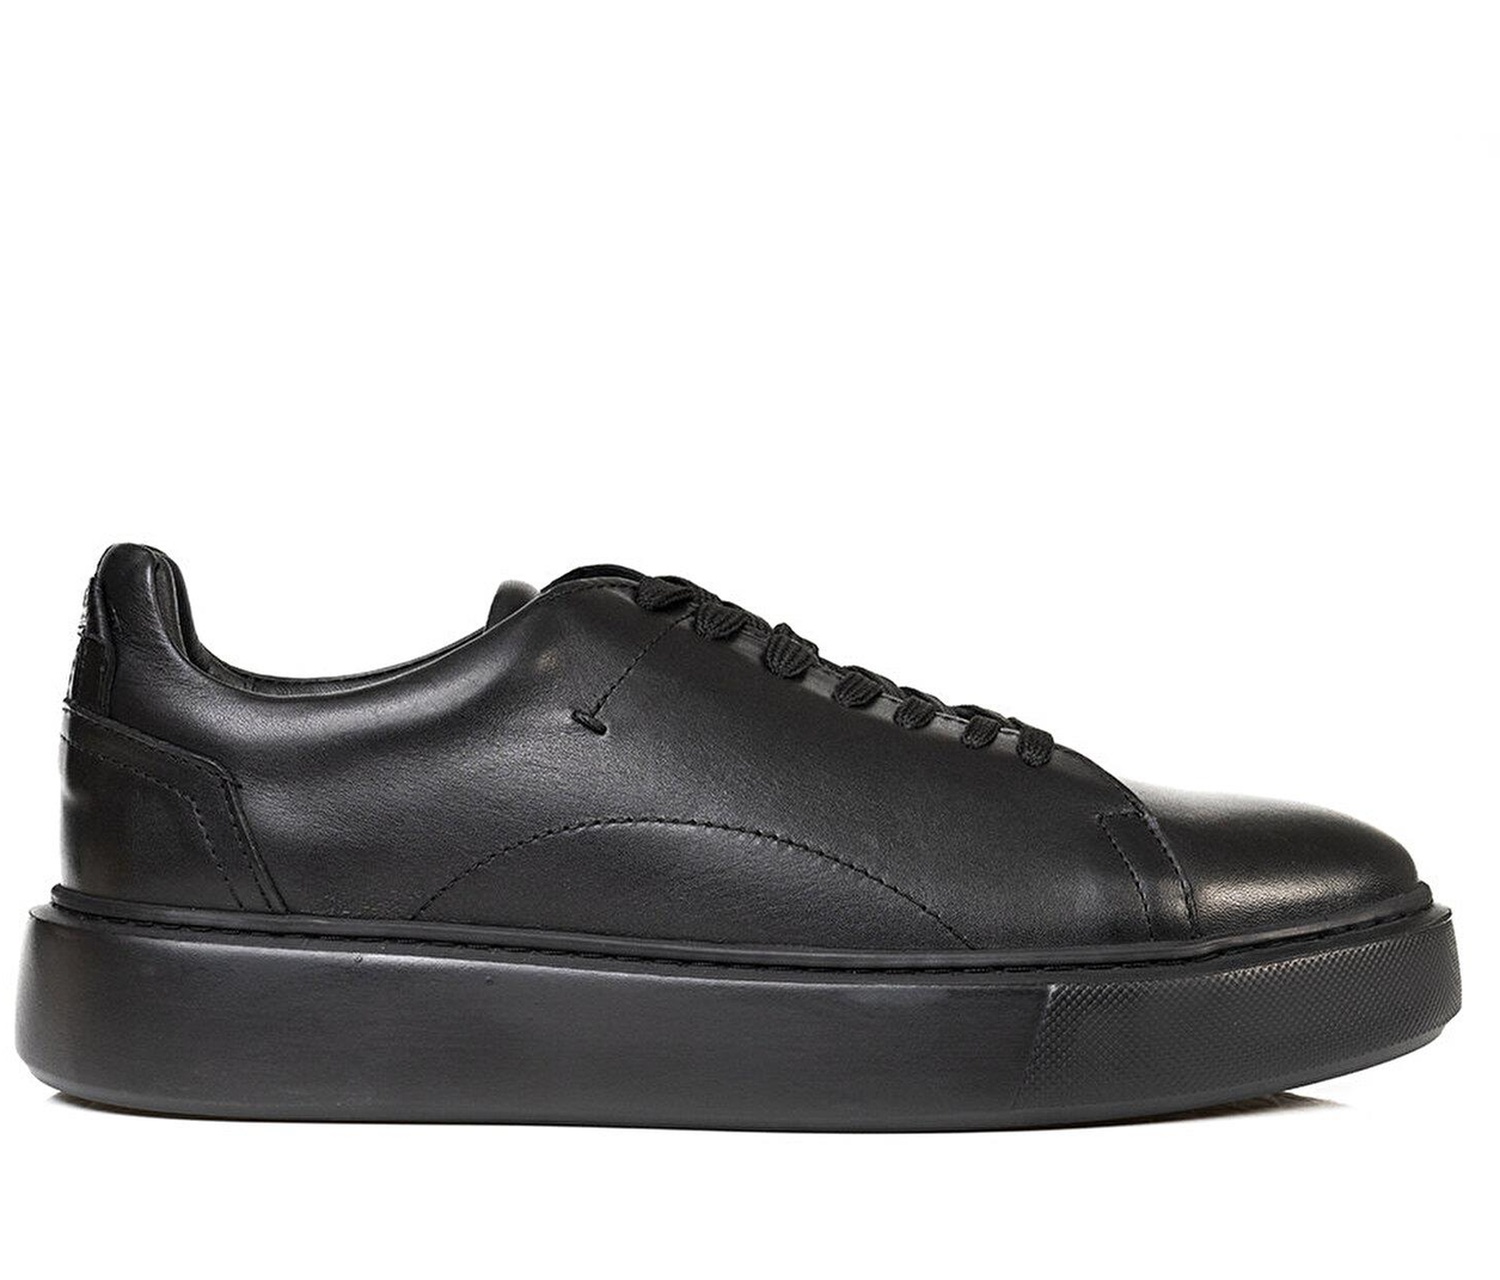 Greyder 75162 Erkek Siyah Hakiki Deri Sneaker Ayakkabı-81-siyah